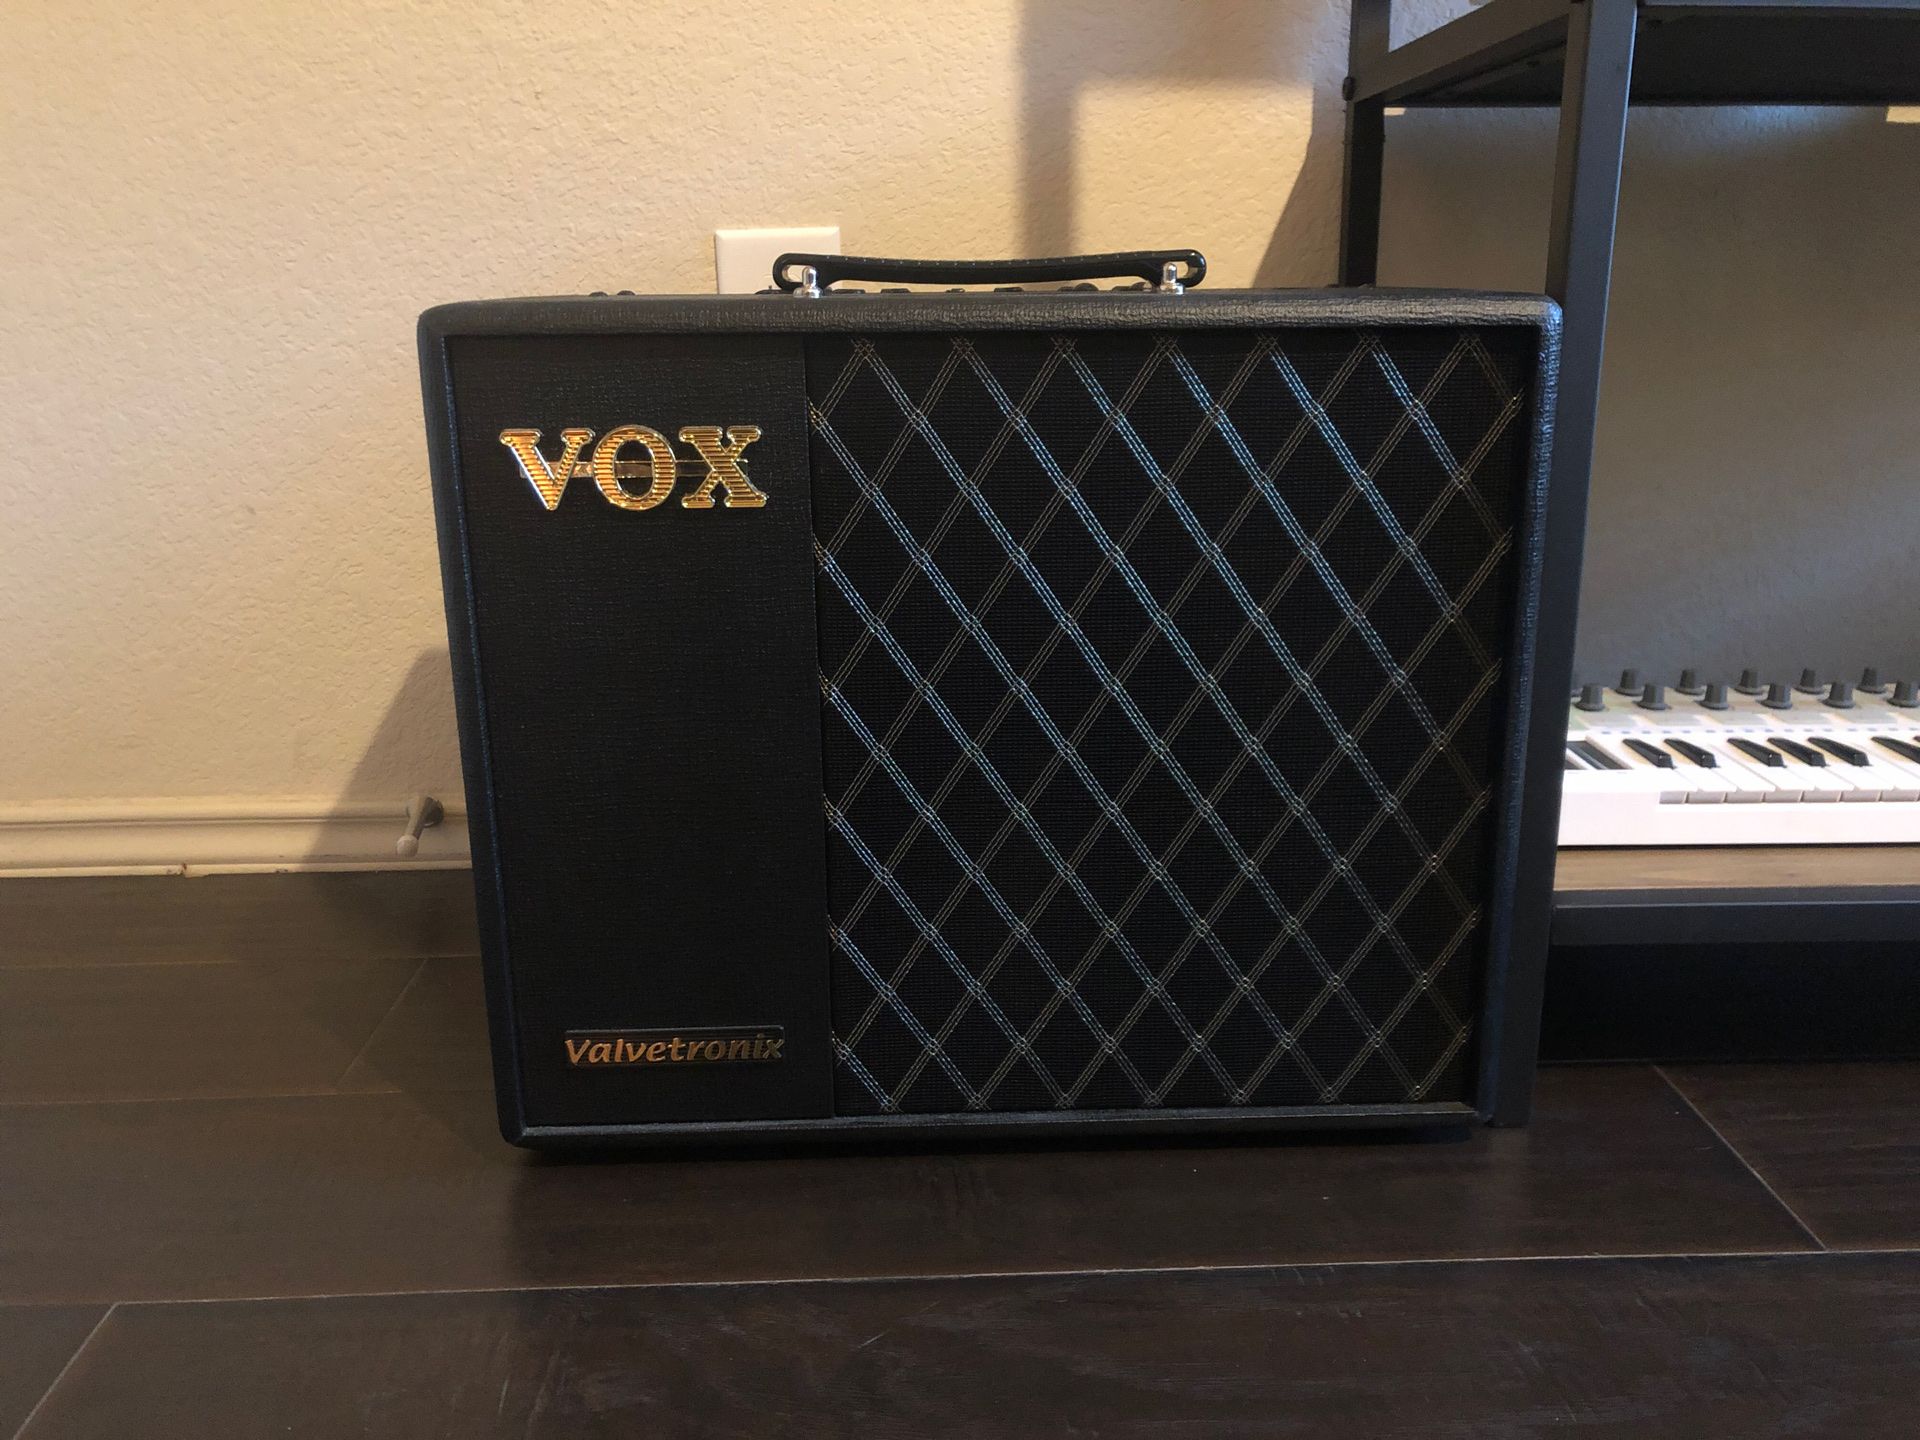 Vox valvetronix